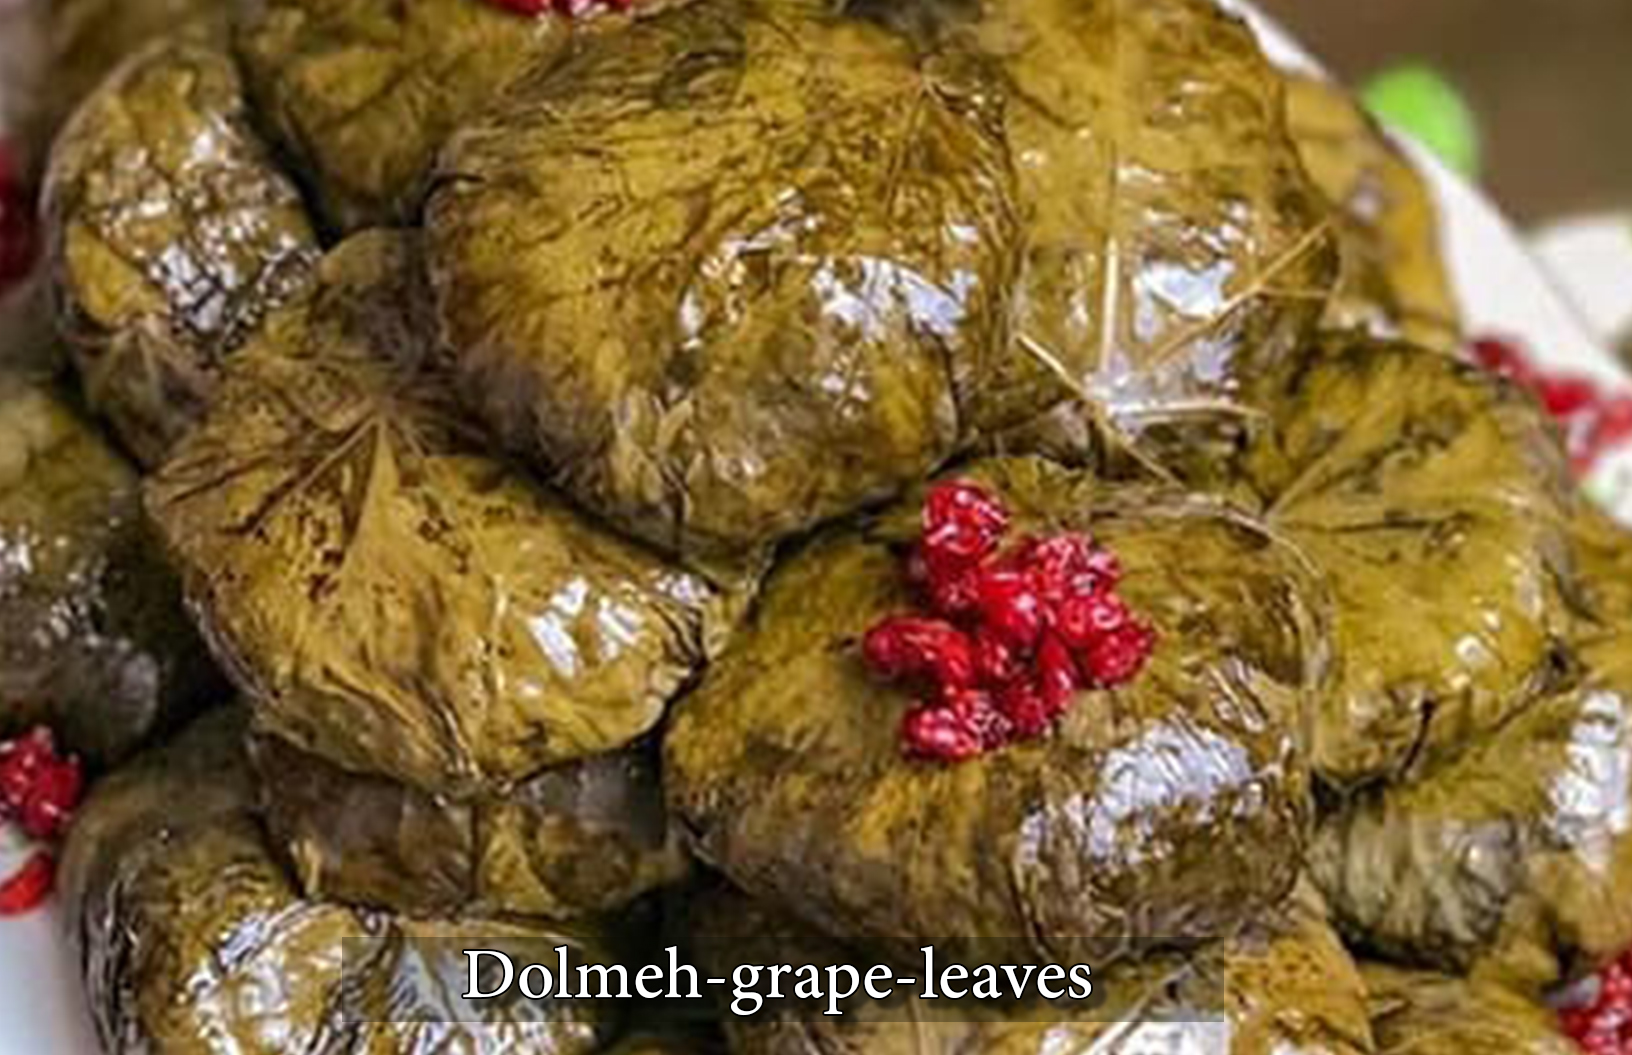 Dolmeh-grape-leaves